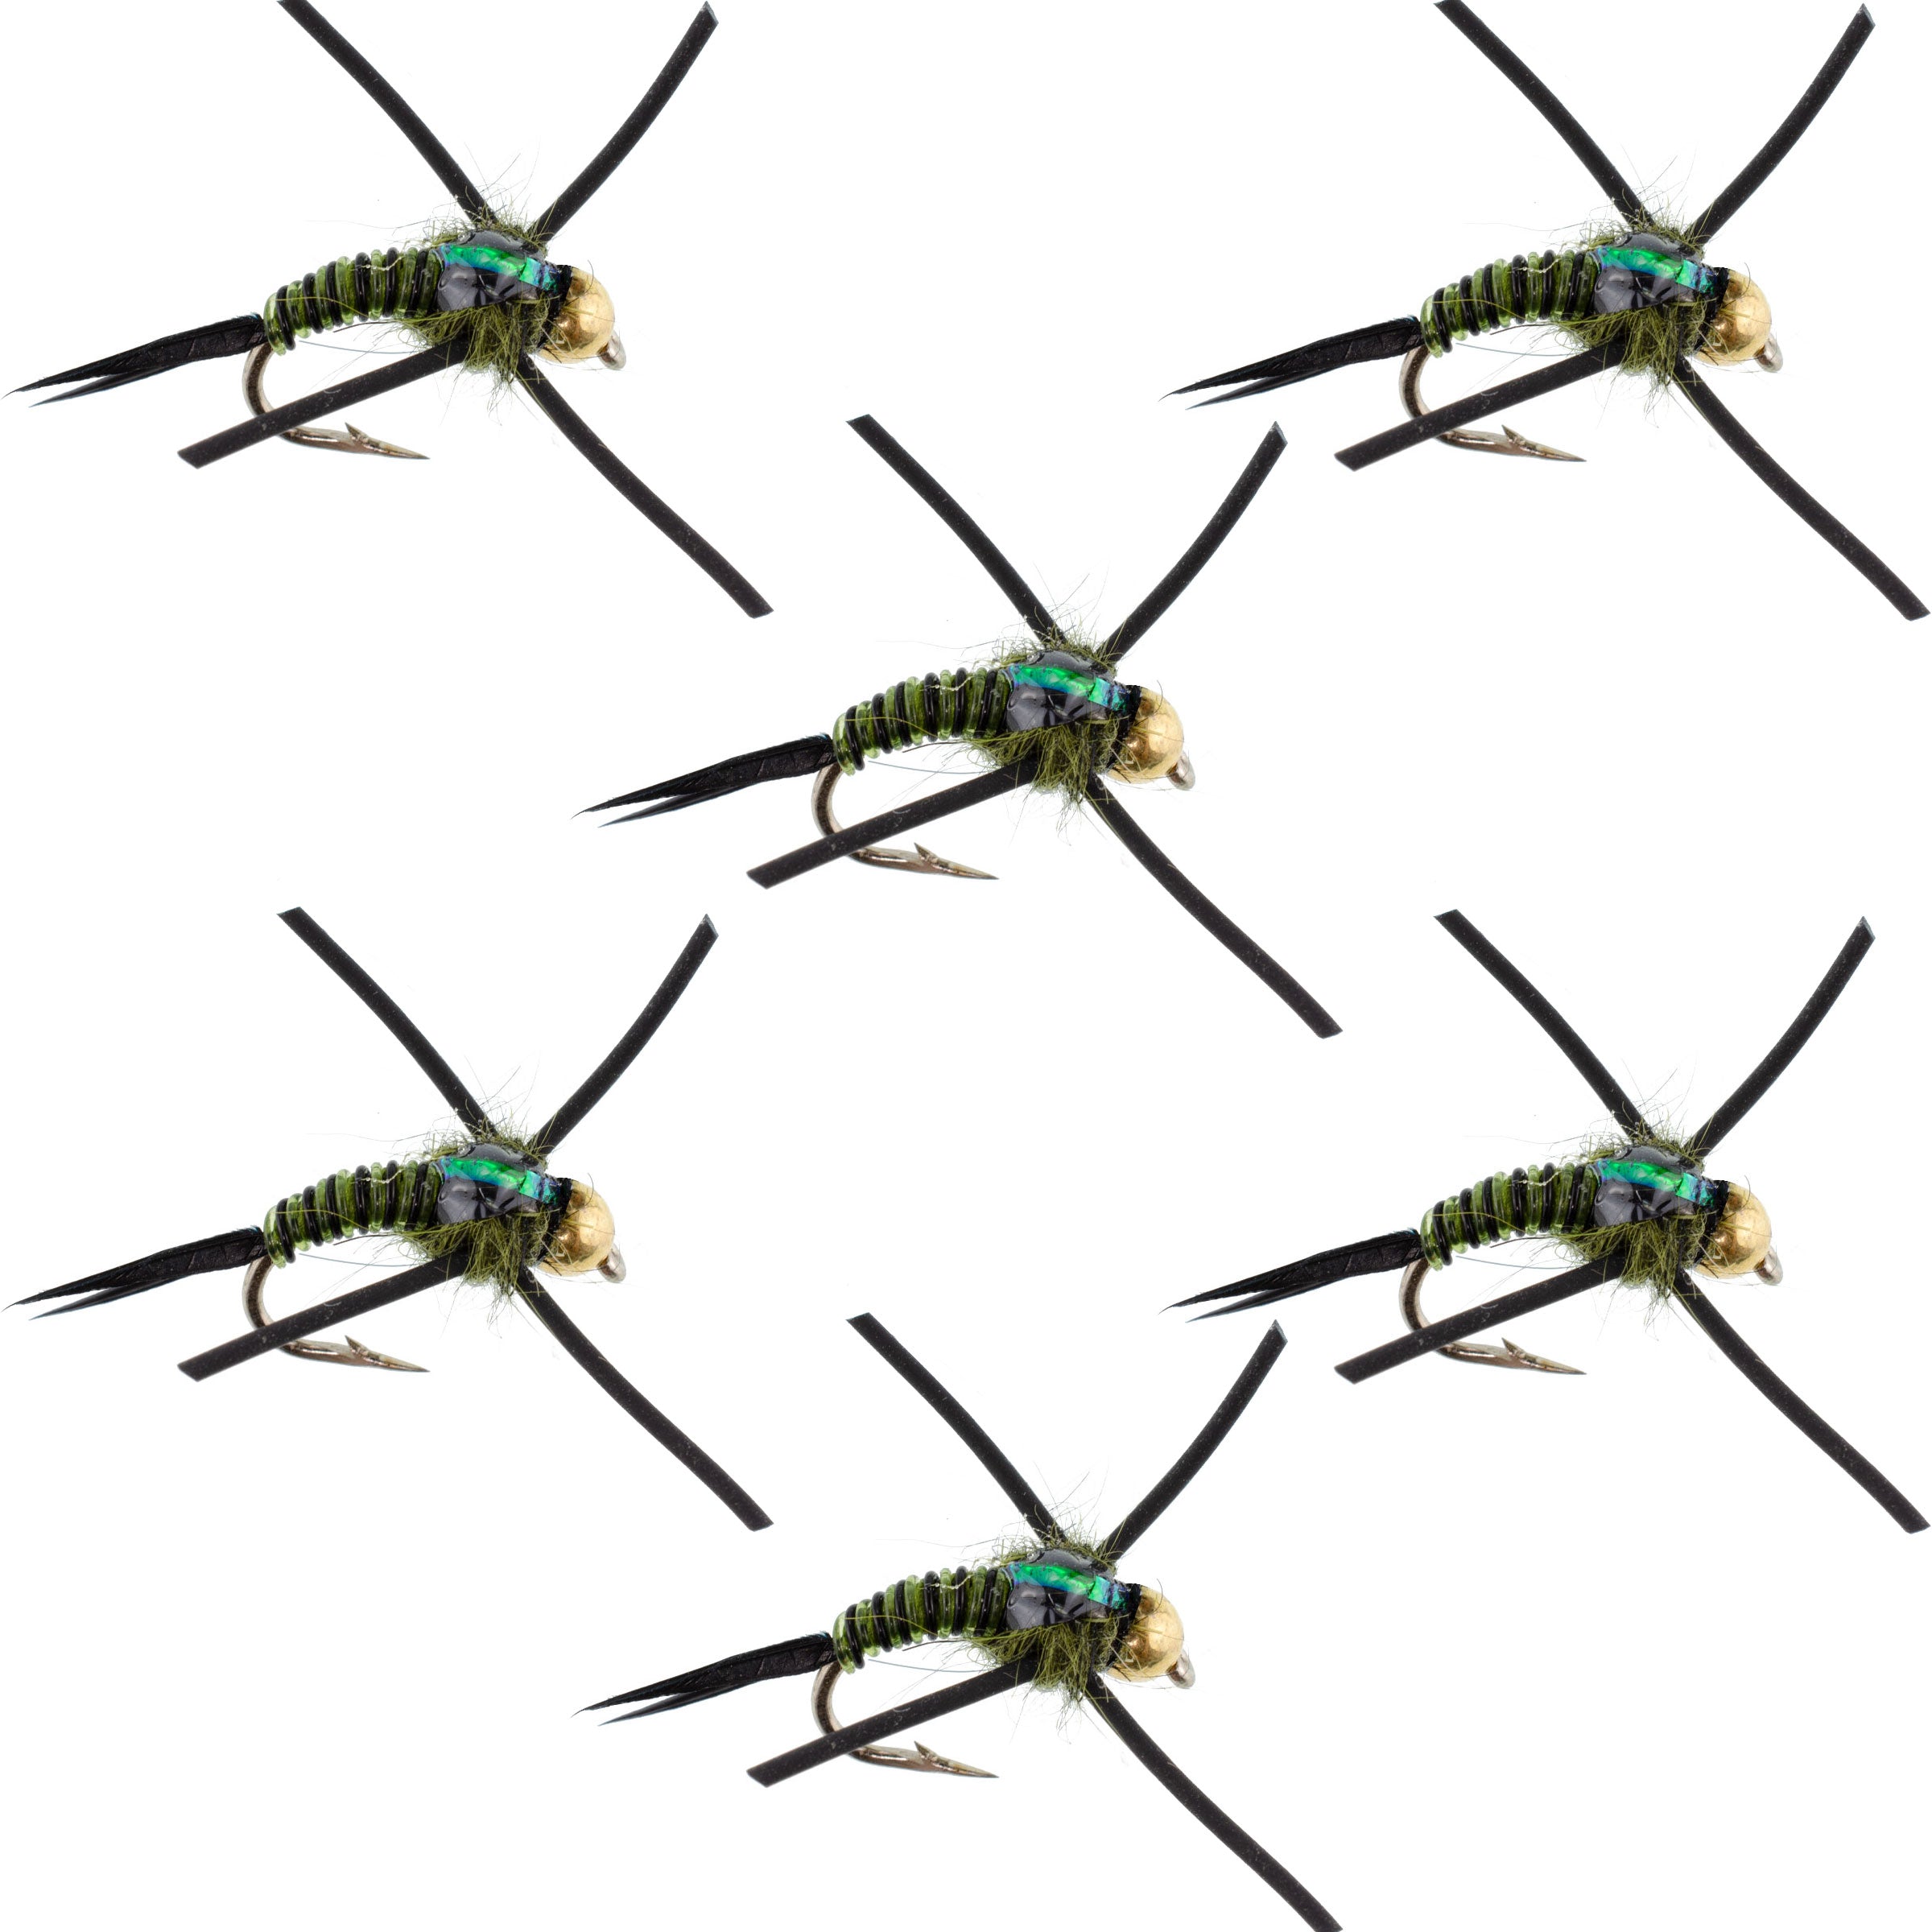 Tungsten Bead Head Rubber Legs Black Olive Zebra Copper John Nymph Fly Fishing Flies - Set of 6 Flies Hook Size 12